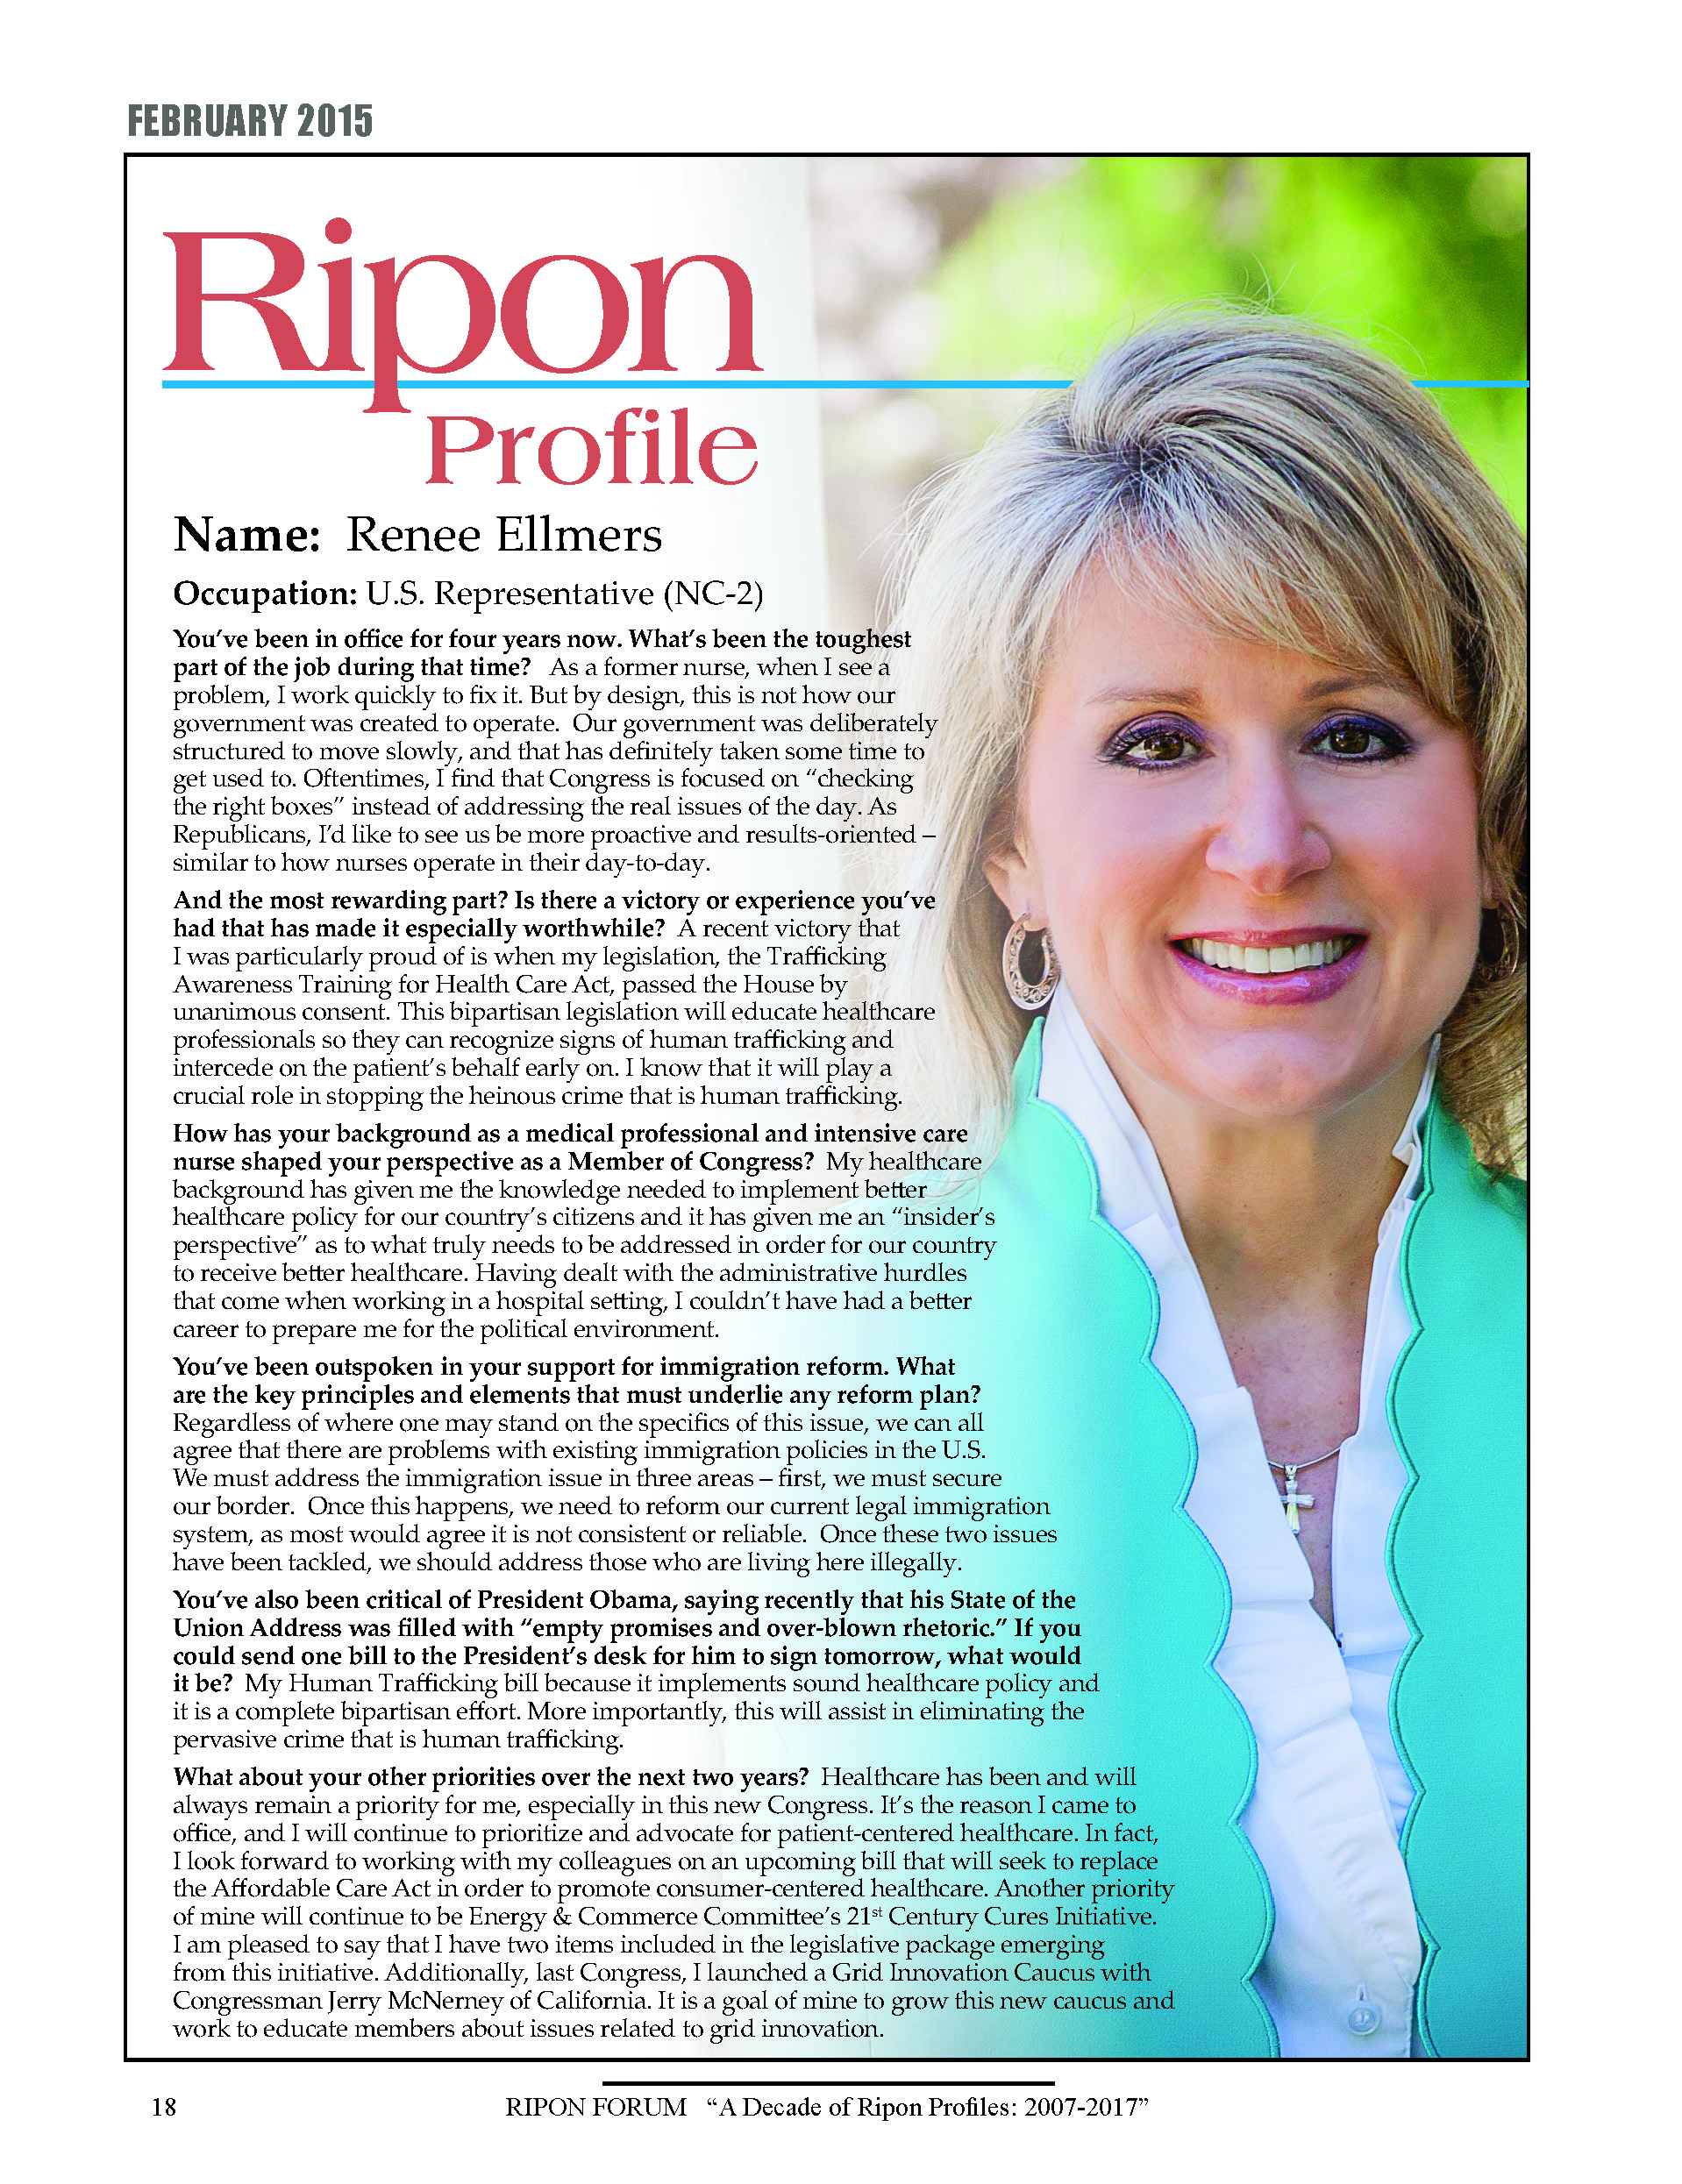 Ripon Profile of Renee Ellmers